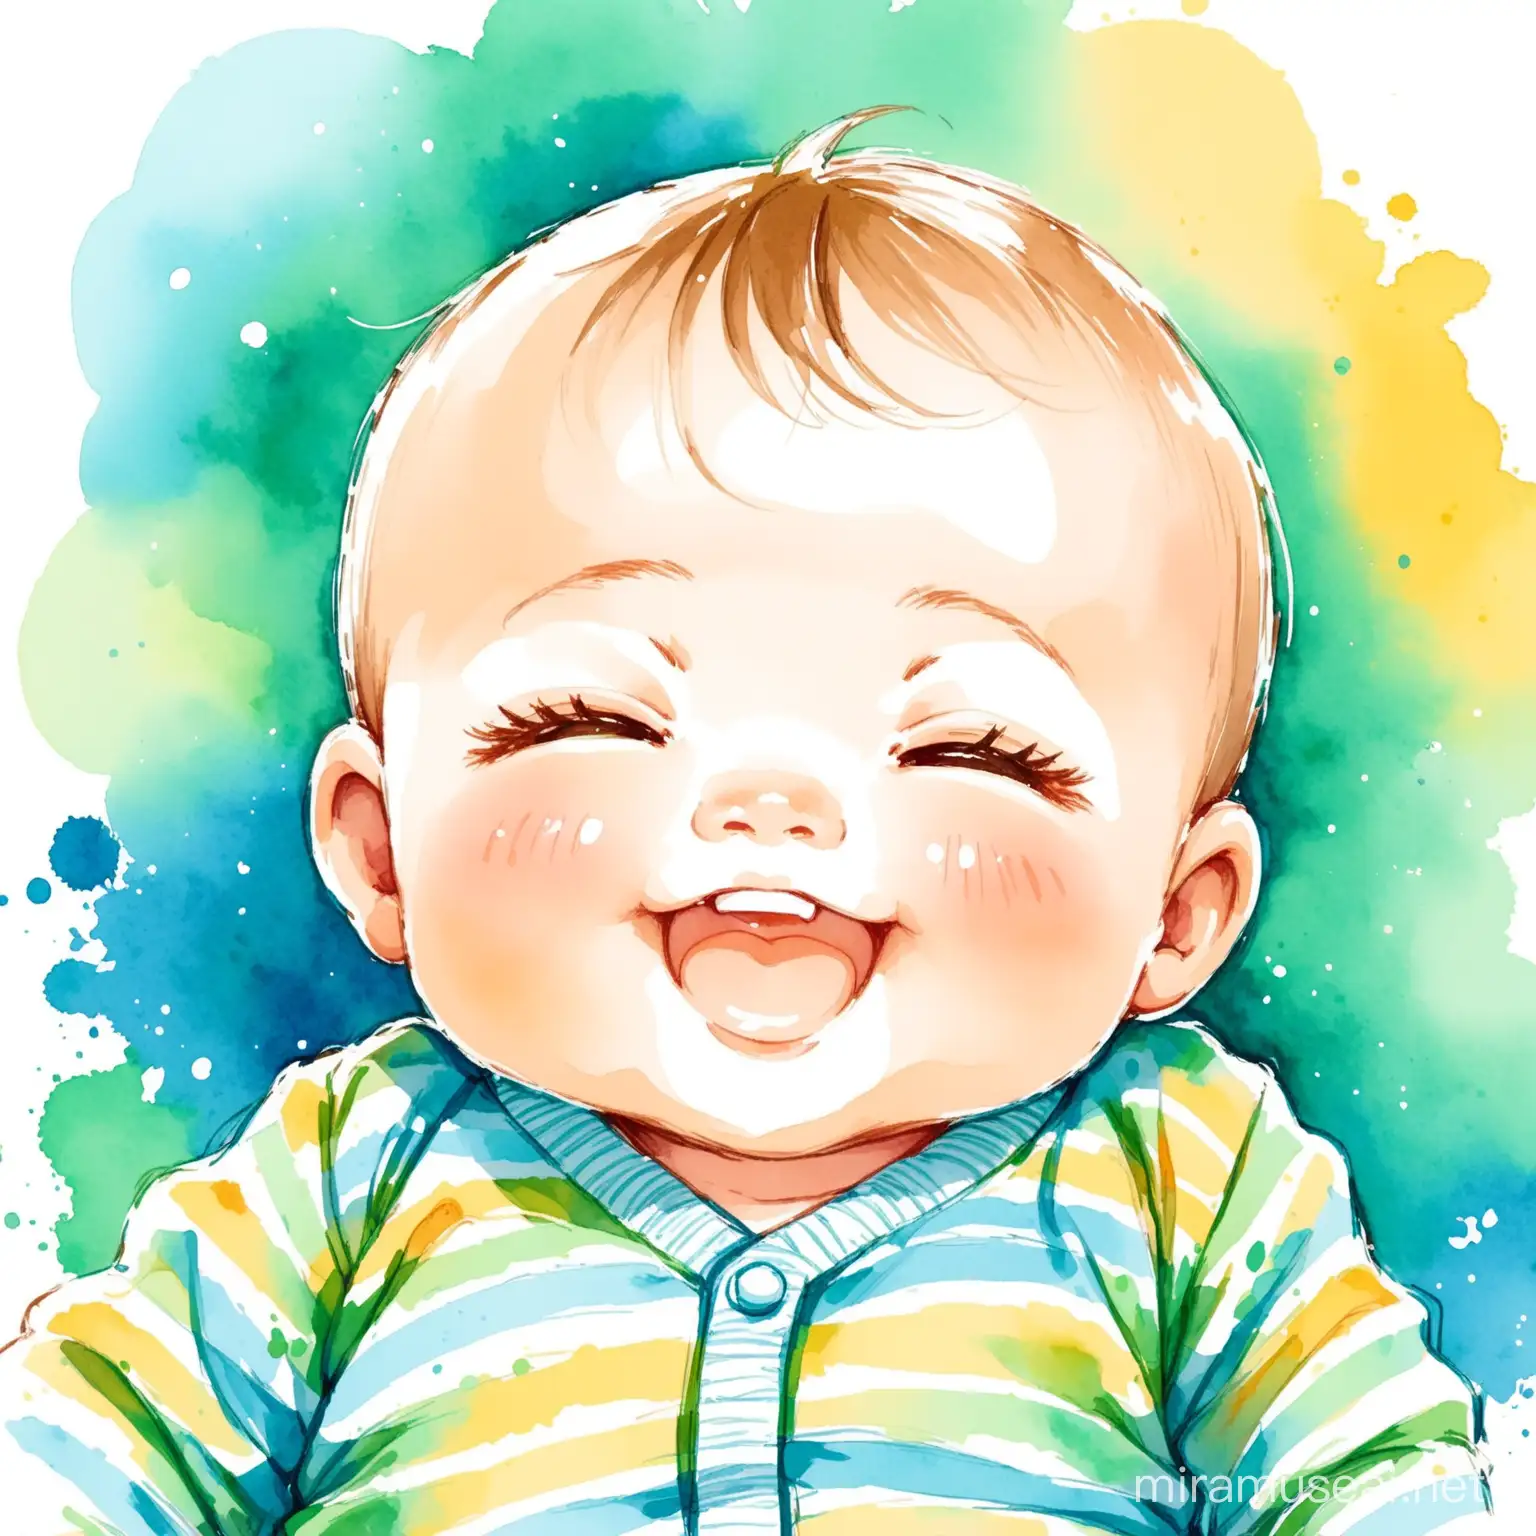 Sketch of happy baby boy in watercolor technic